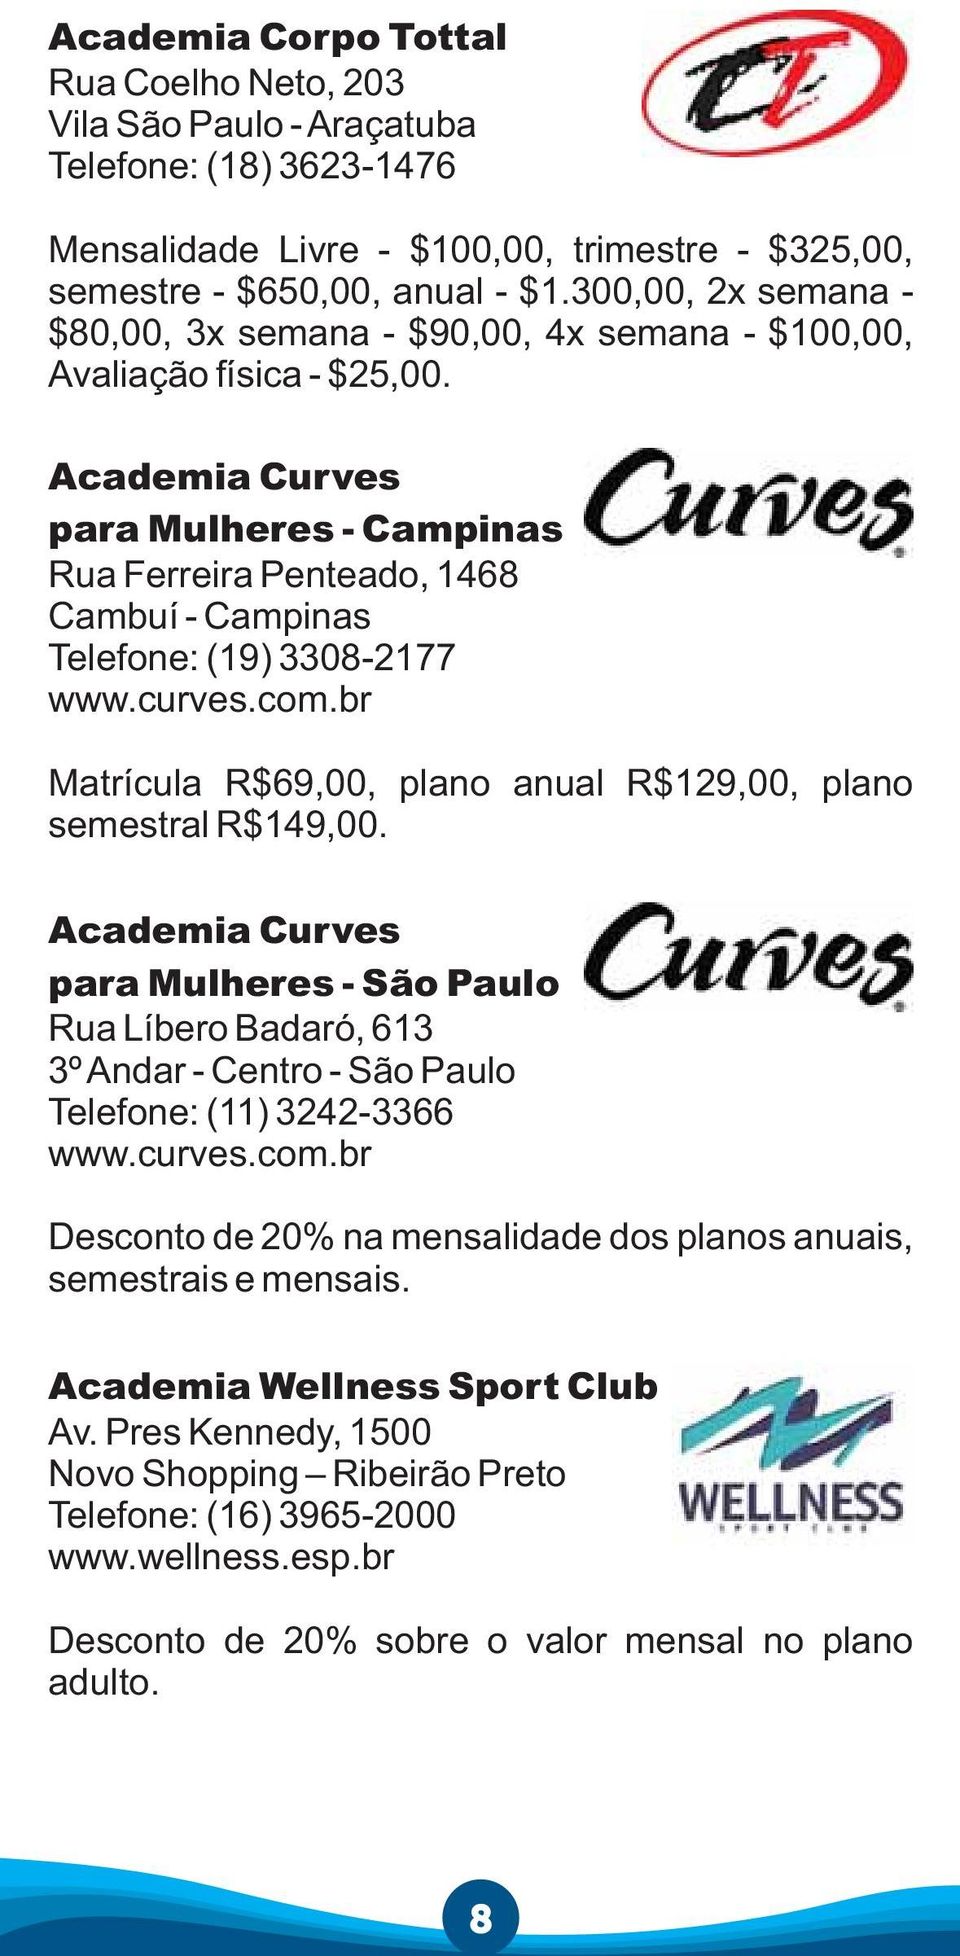 Academia Curves para Mulheres - Campinas Rua Ferreira Penteado, 1468 Cambuí - Campinas Telefone: (19) 3308-2177 www.curves.com.br Matrícula R$69,00, plano anual R$129,00, plano semestral R$149,00.